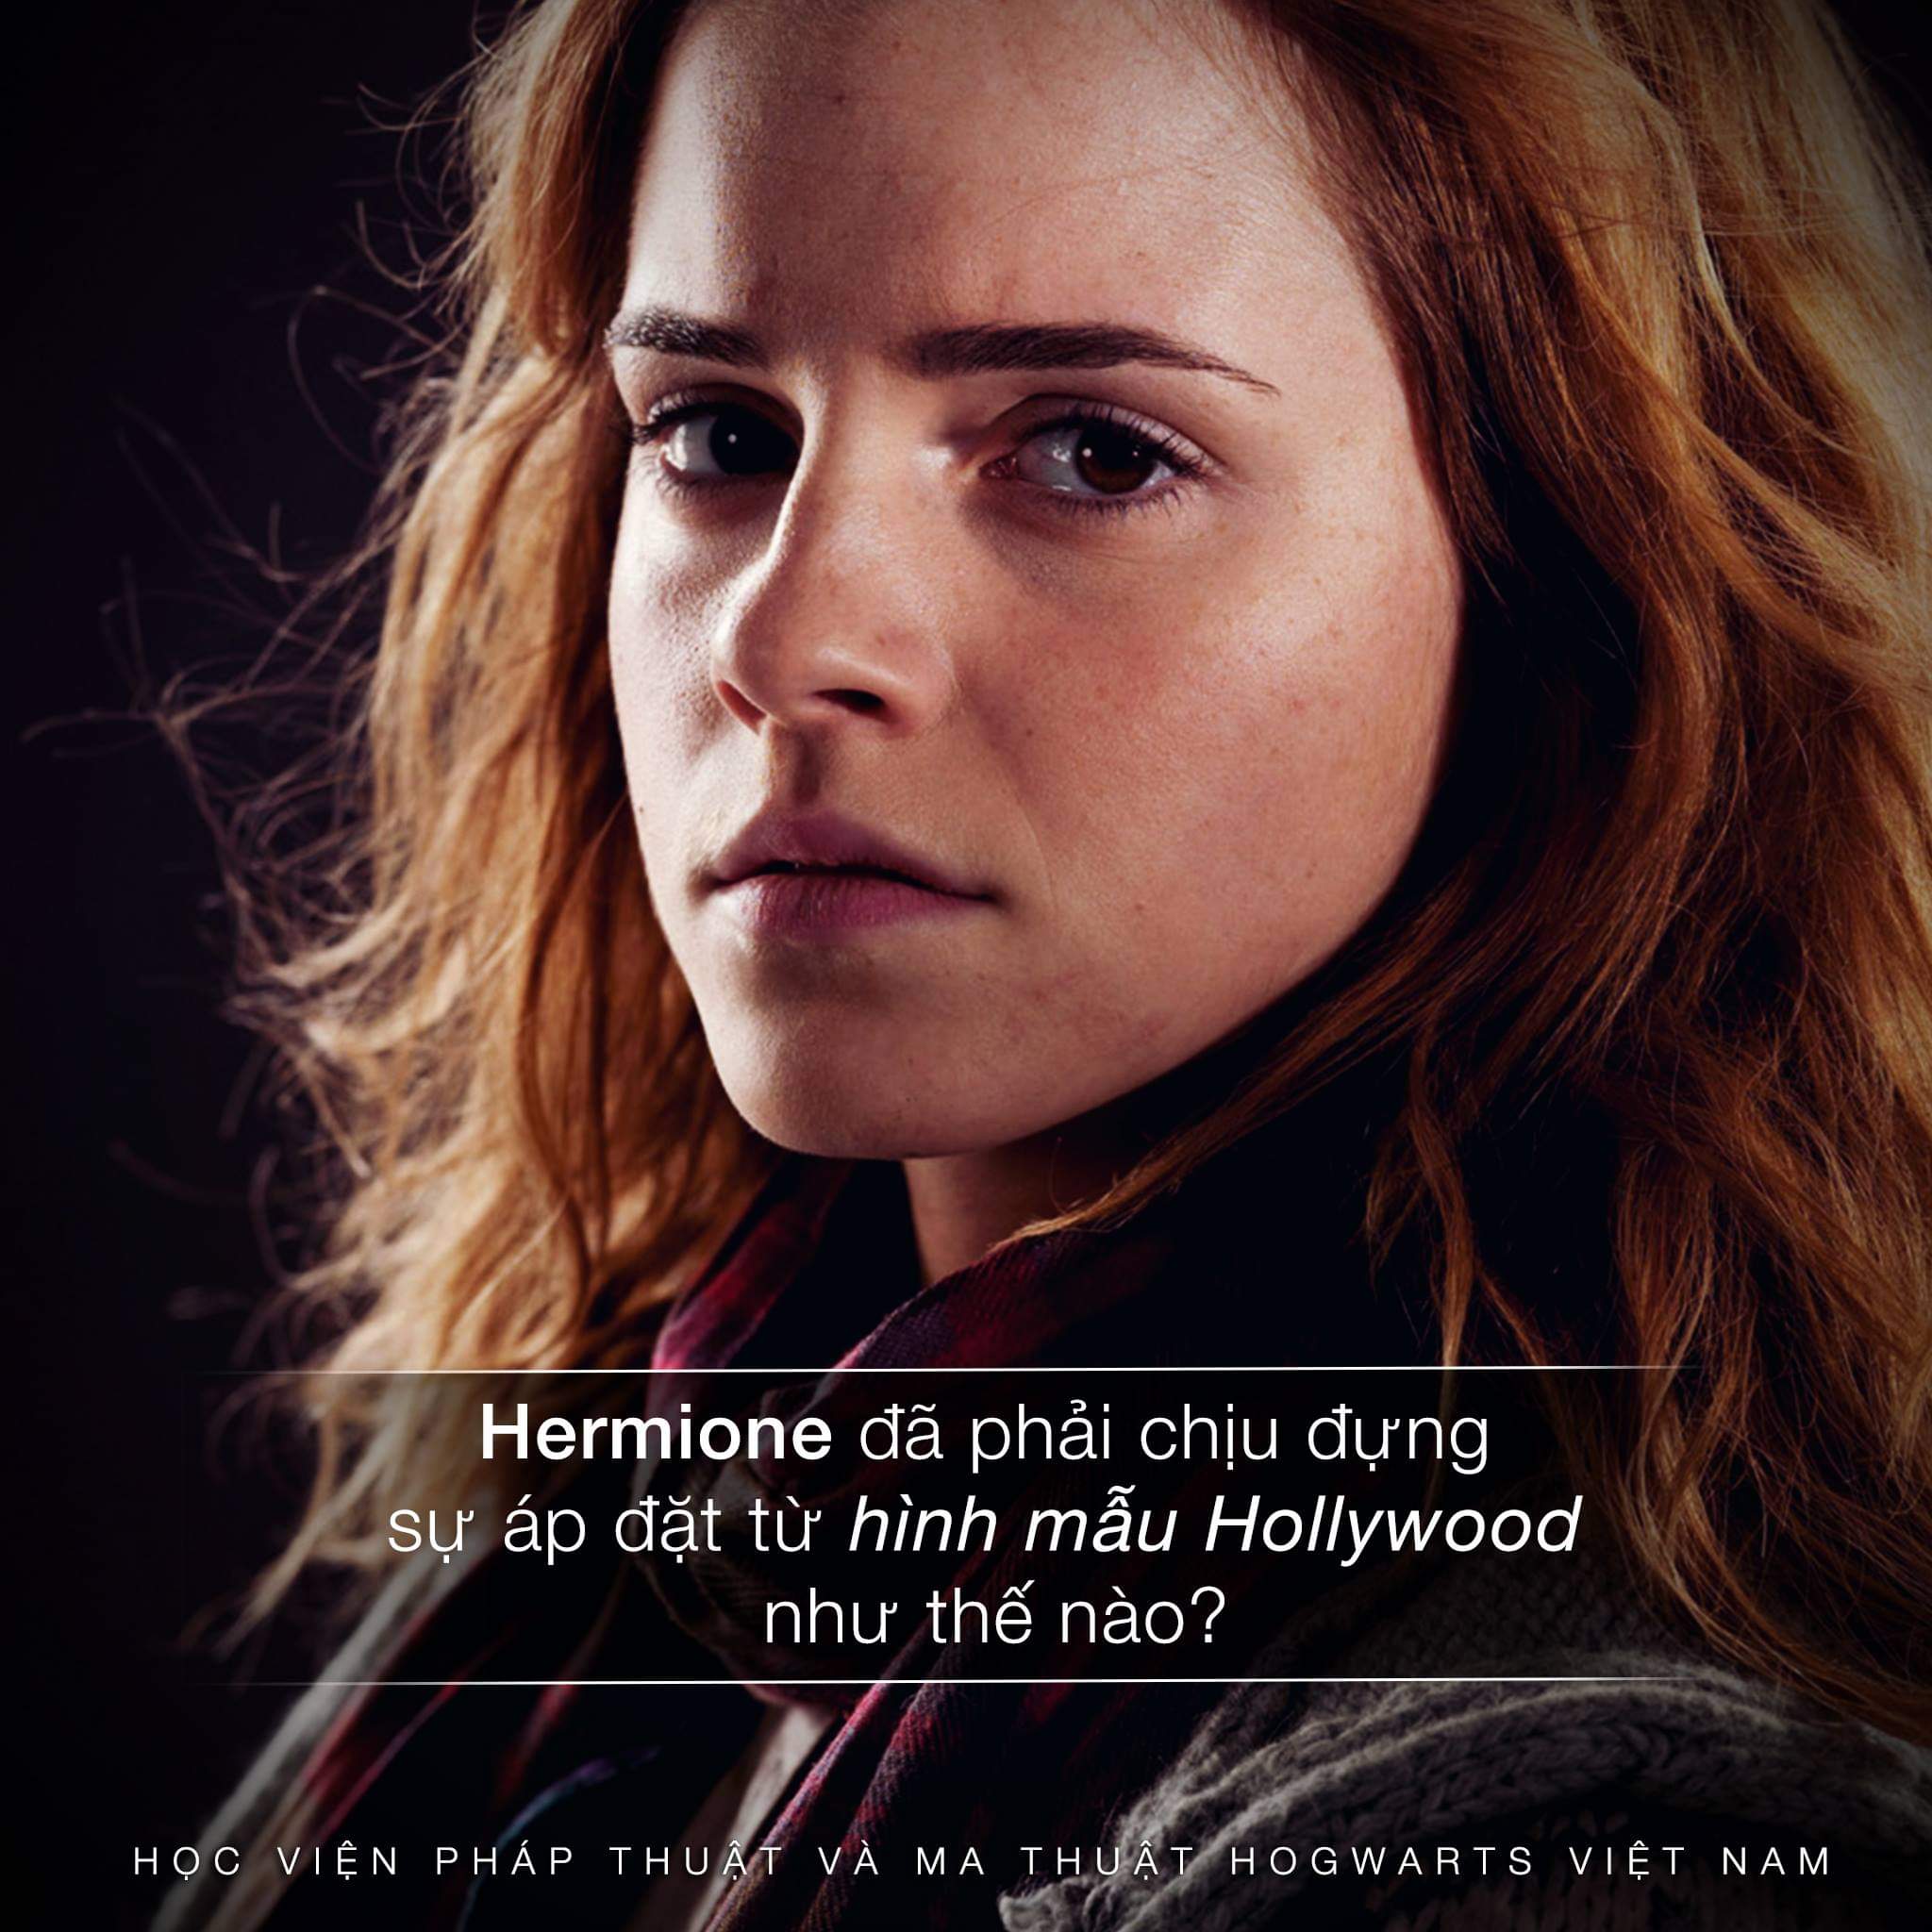 Hermion đã phải chịu đựng sự áp đặt từ hình mẫu Hollywood như thế nào?